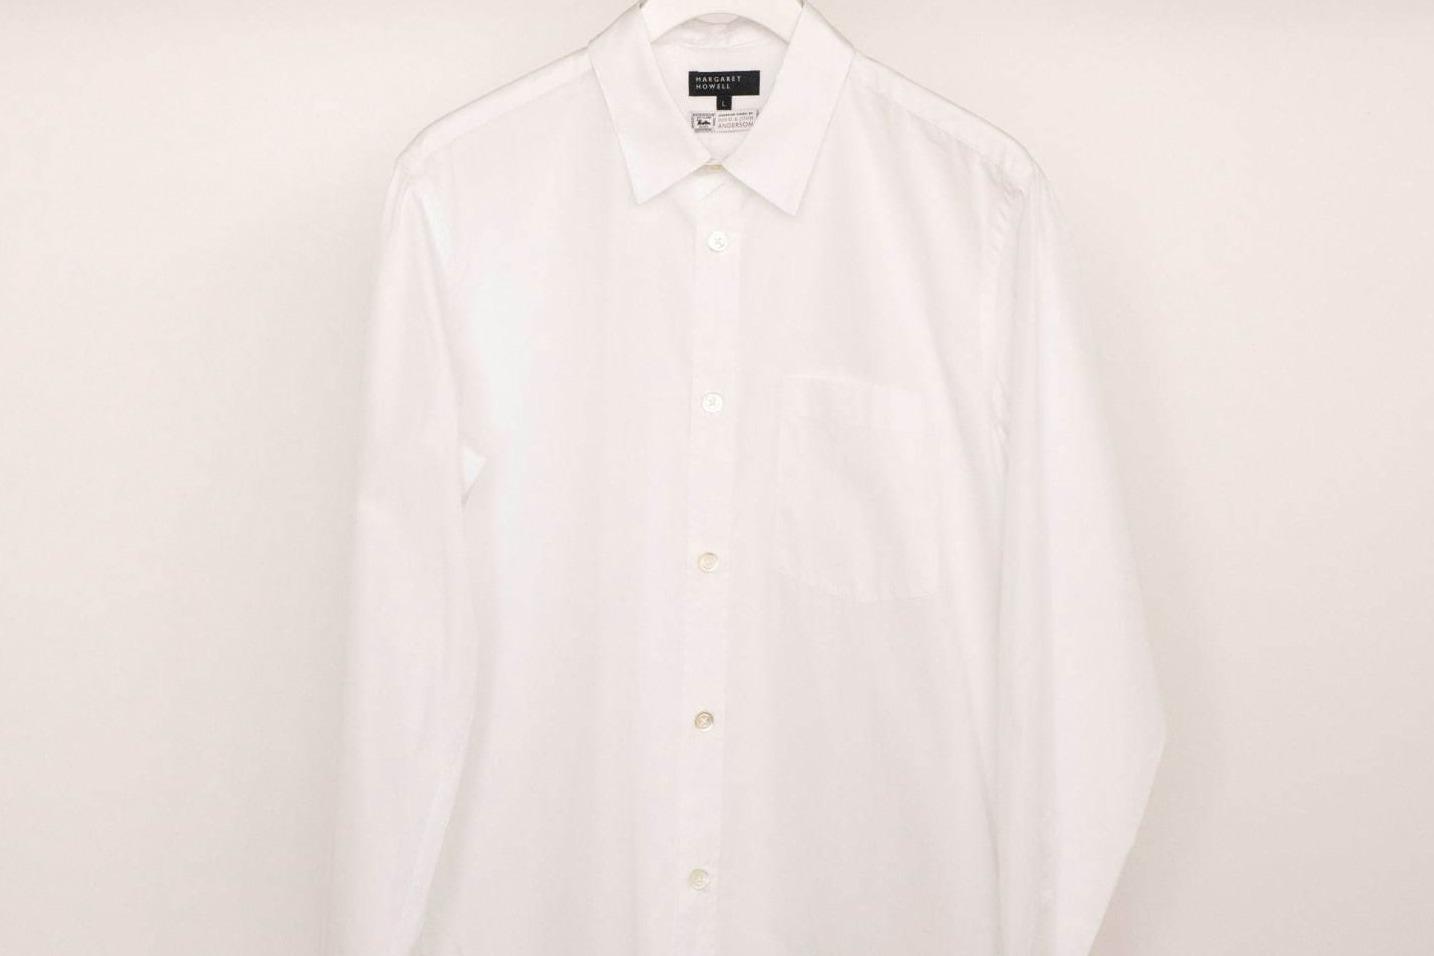 マーガレット・ハウエル“ブランドの原点”クラシックシャツがベースの限定シャツ、上質コットン生地 